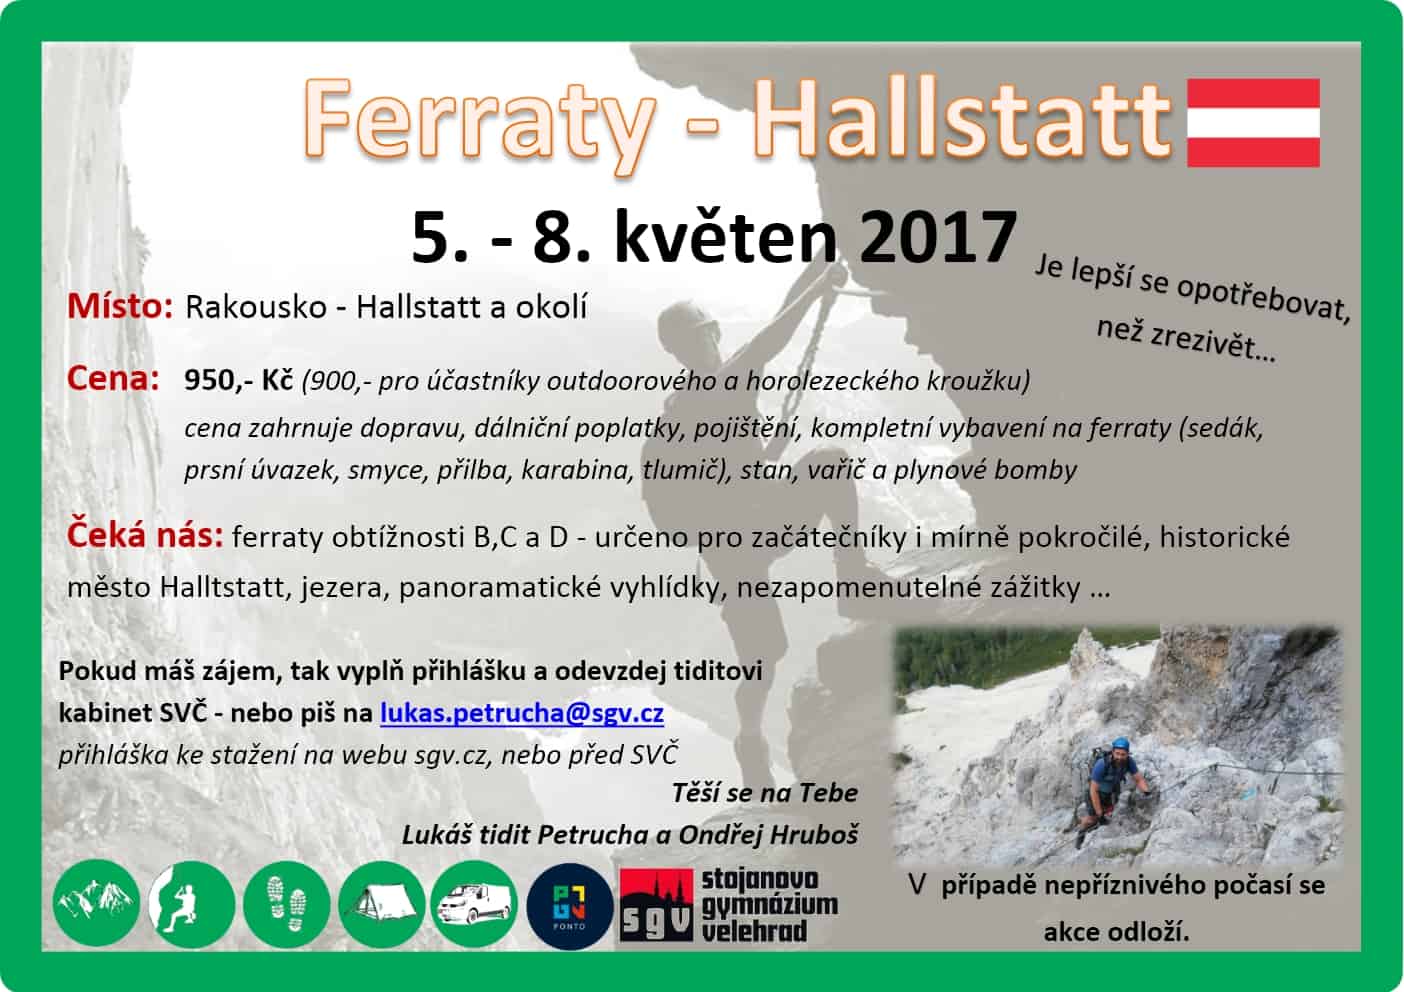 Ferraty – Hallstatt